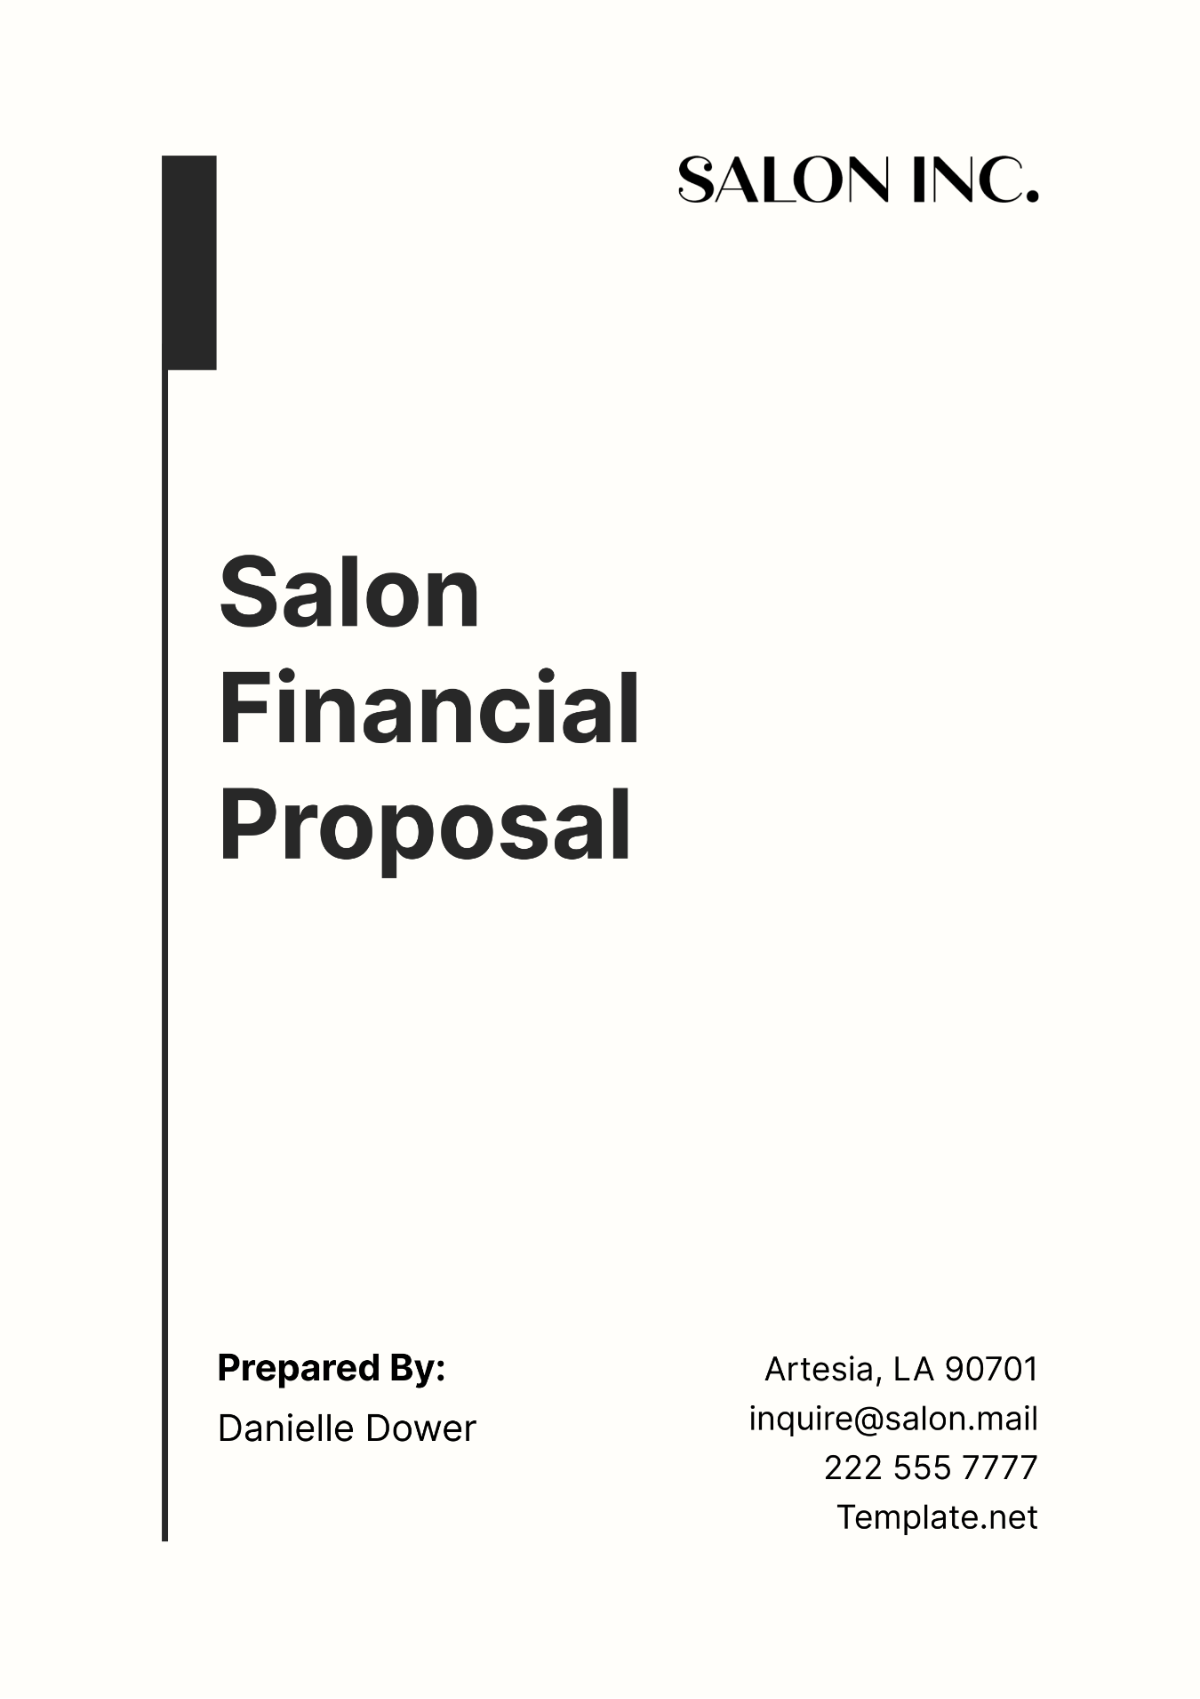 Free Salon Financial Proposal Template